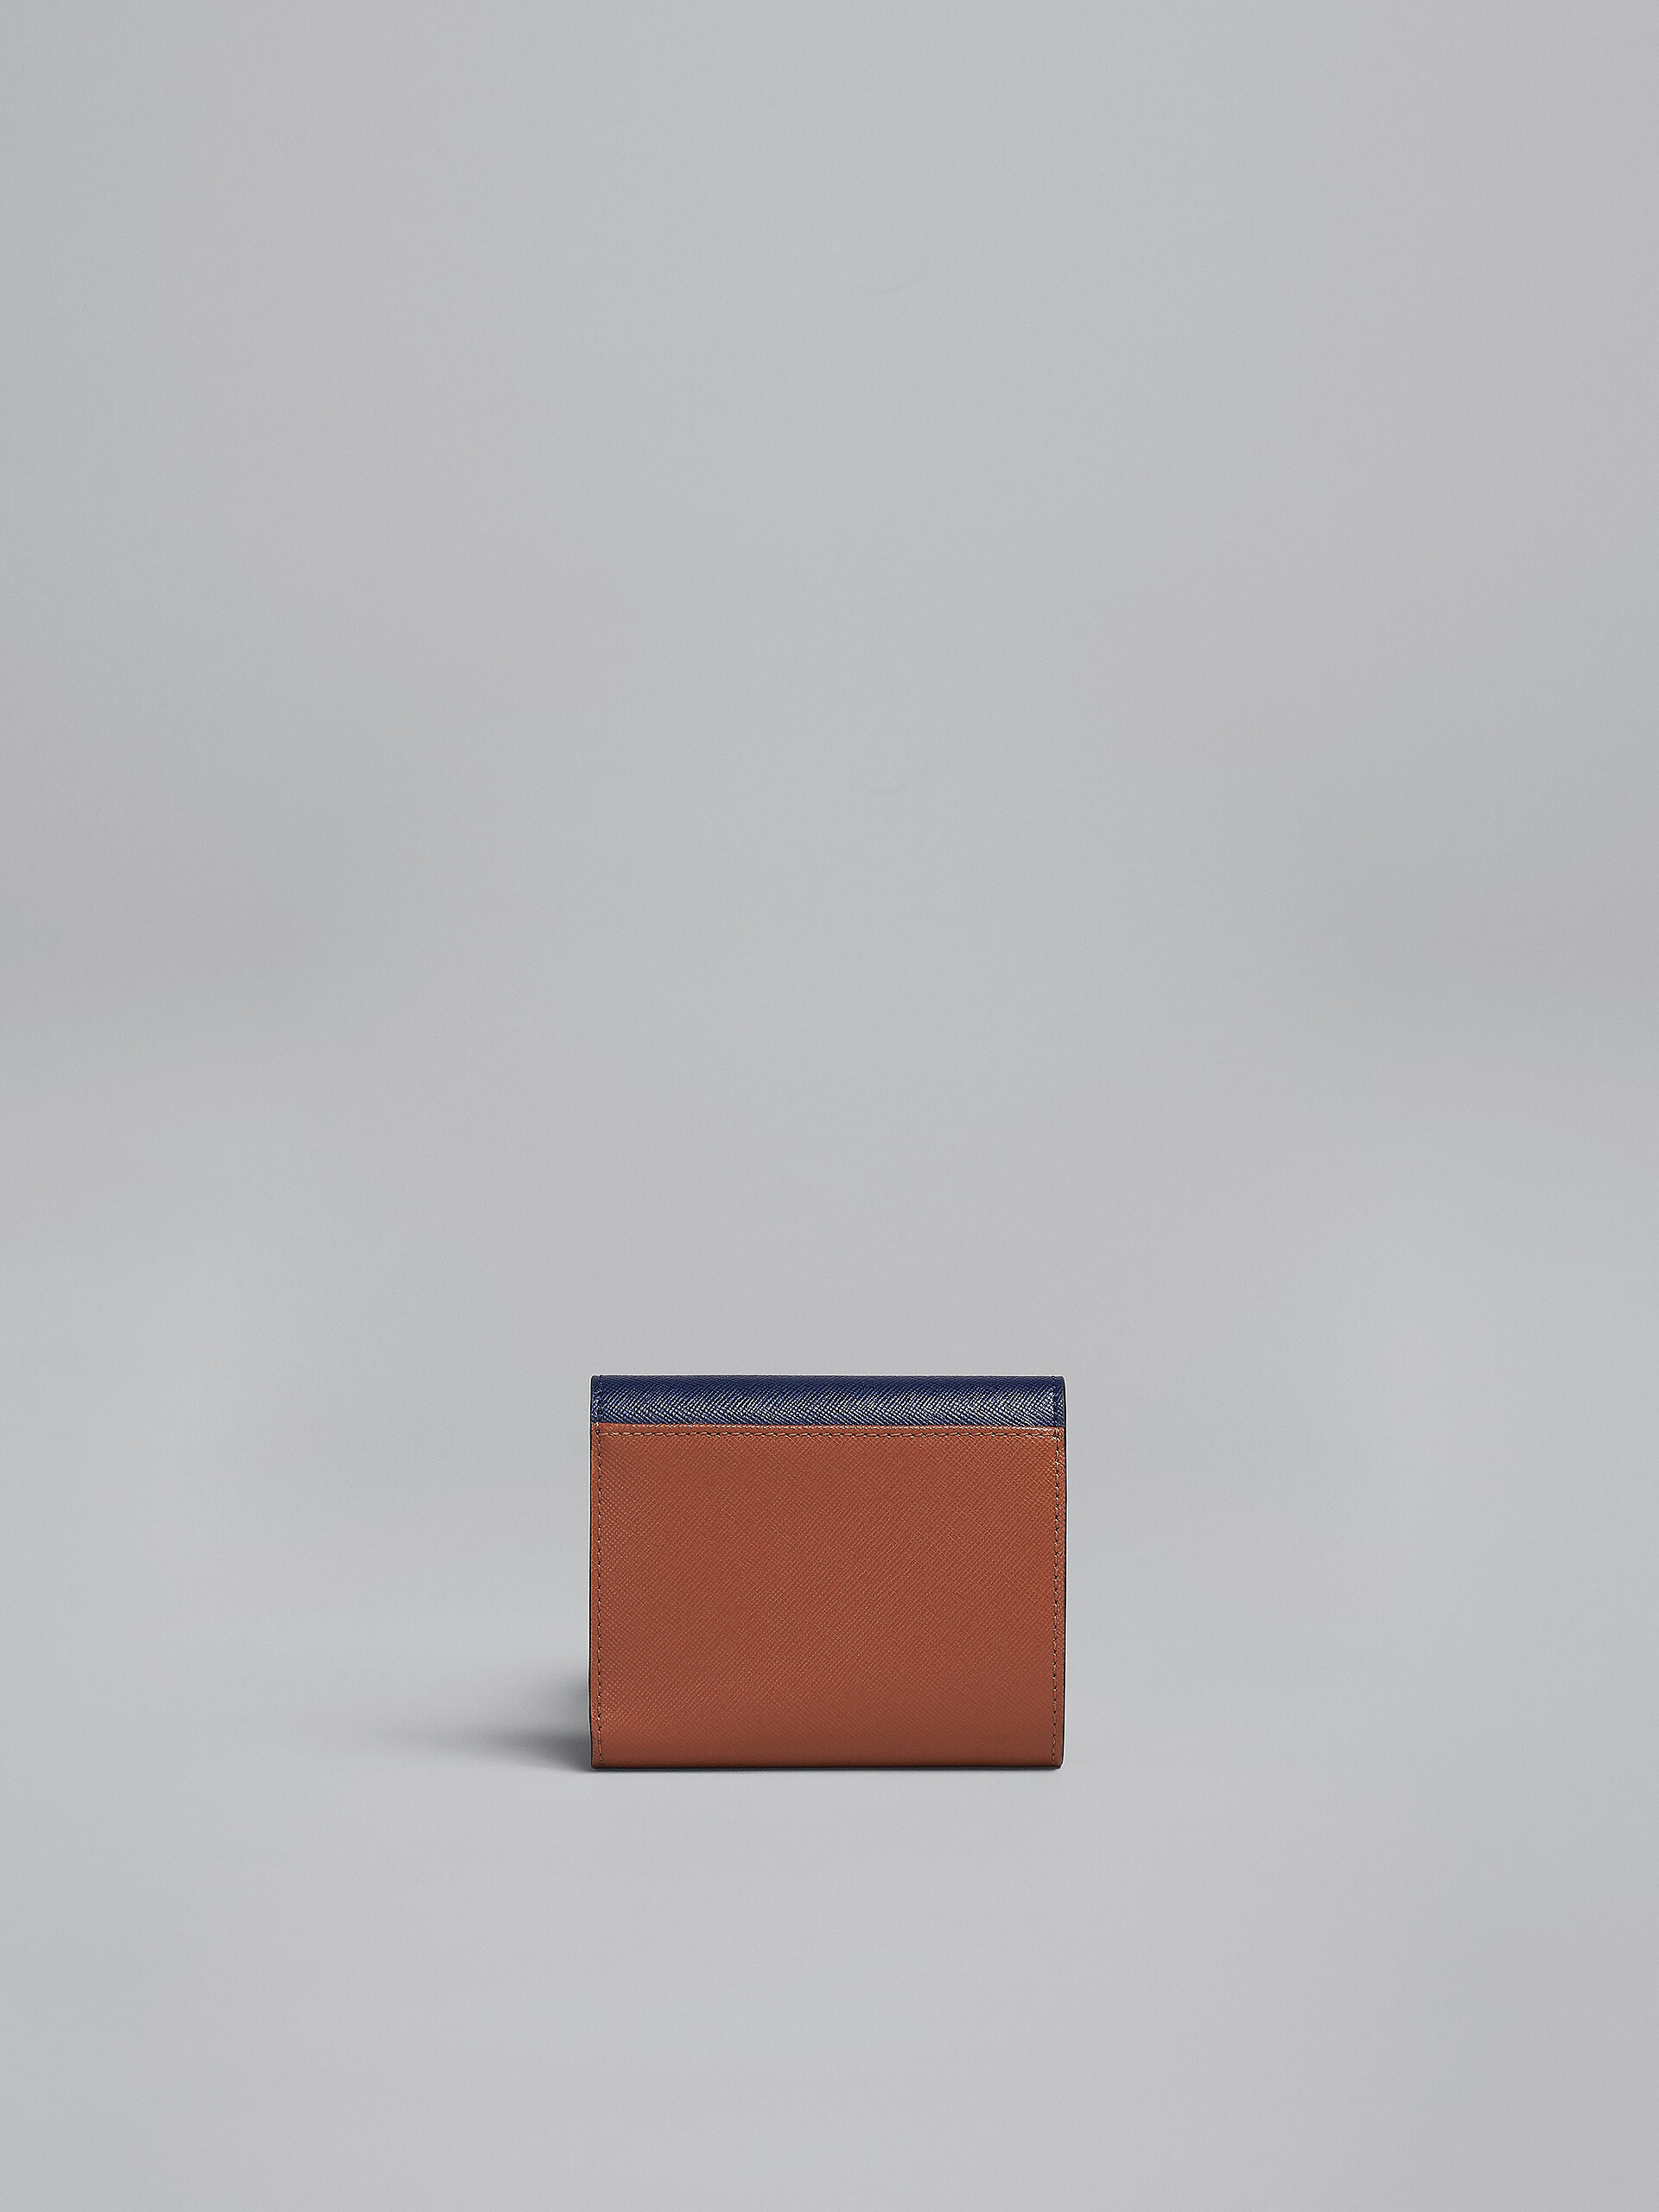 Portafoglio tri-fold in saffiano blu bianco e marrone - Portafogli - Image 3